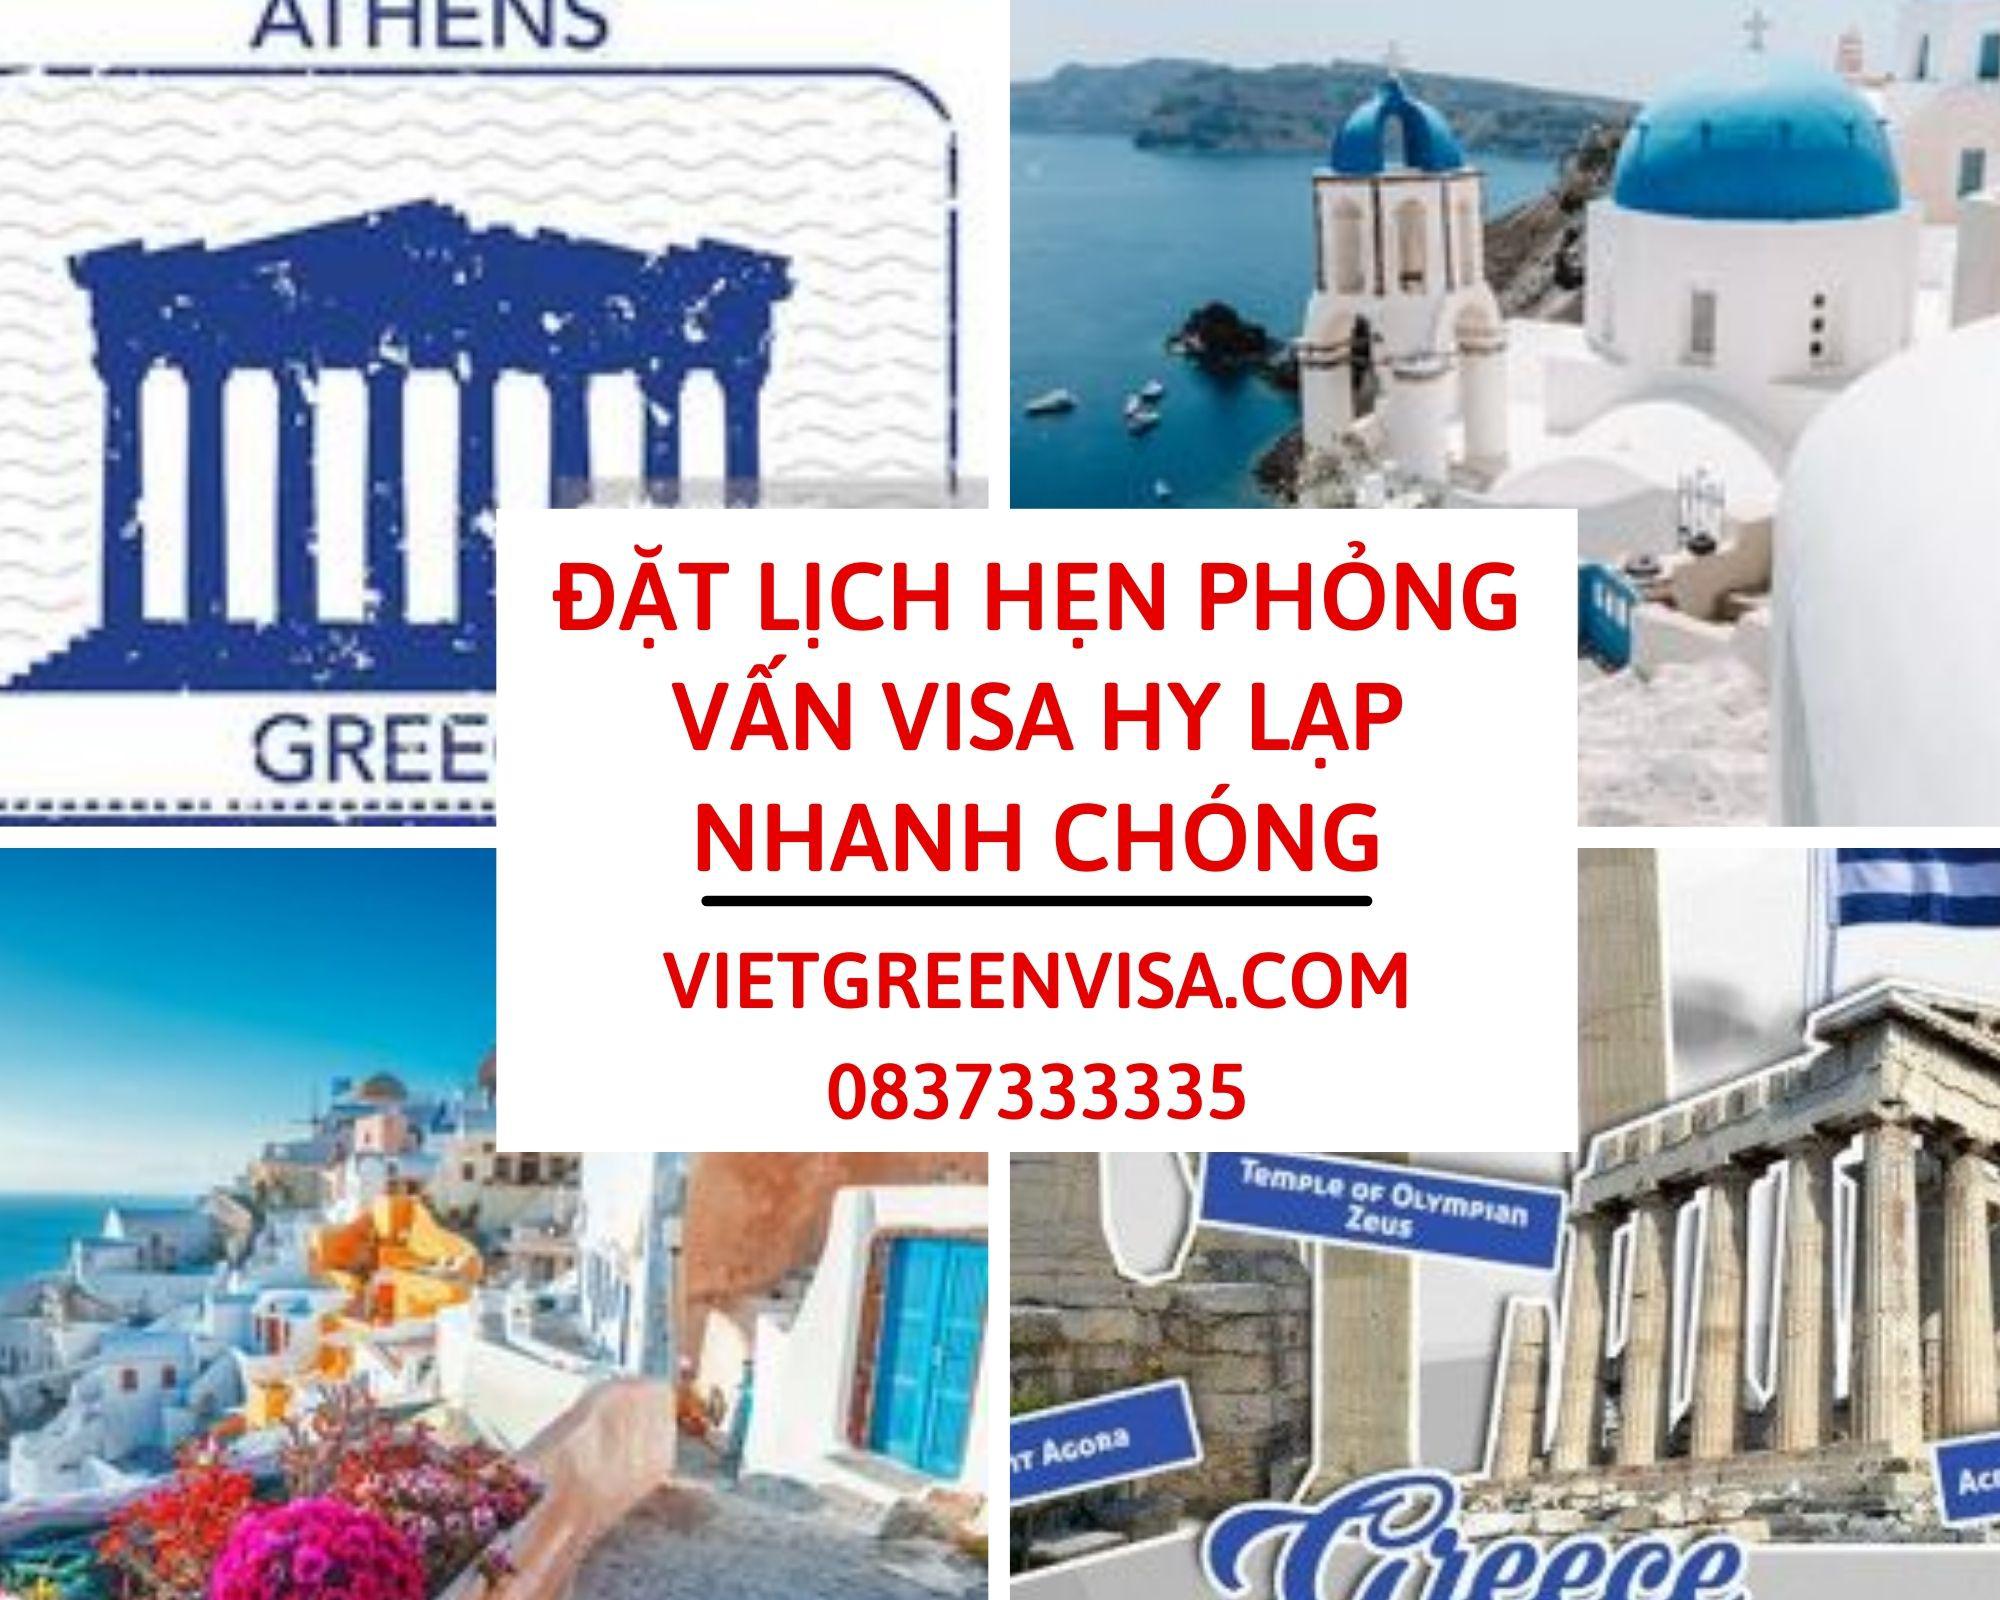 Hỗ trợ đặt lịch hẹn phỏng visa visa Hy Lạp nhanh